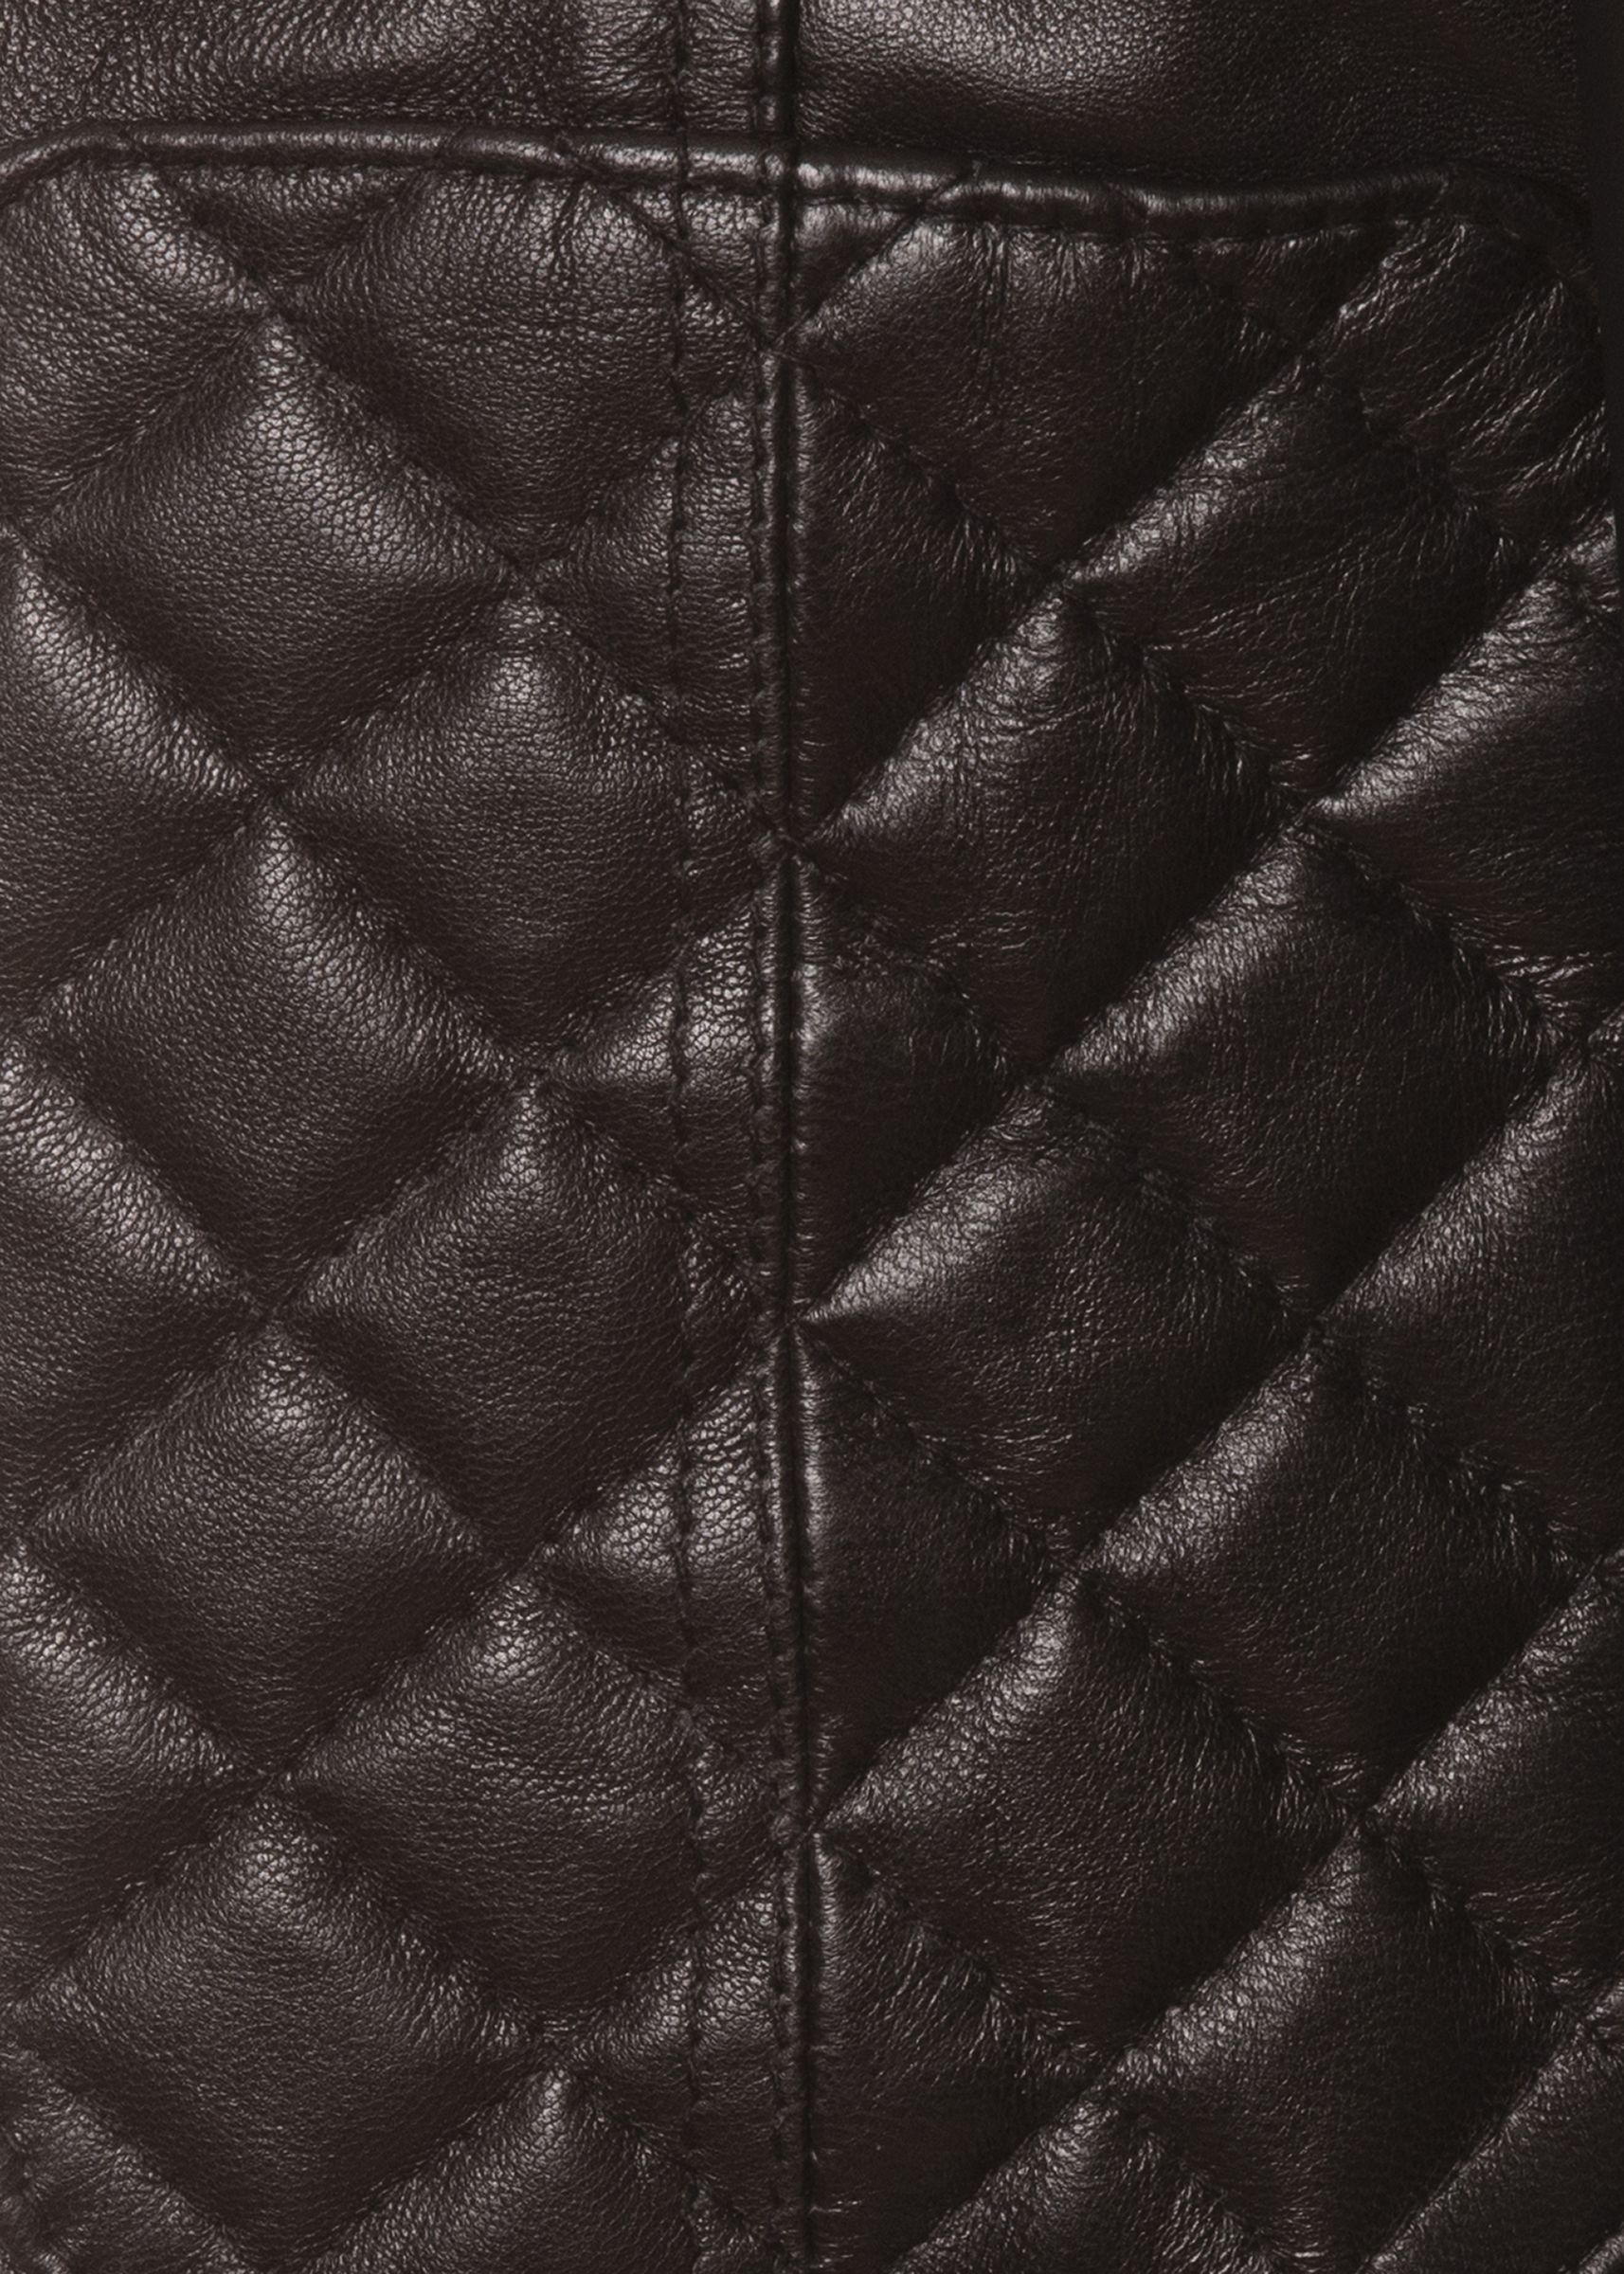 Portofino Leather Jacket - Second Skin Leather and Sheepskin Clothing